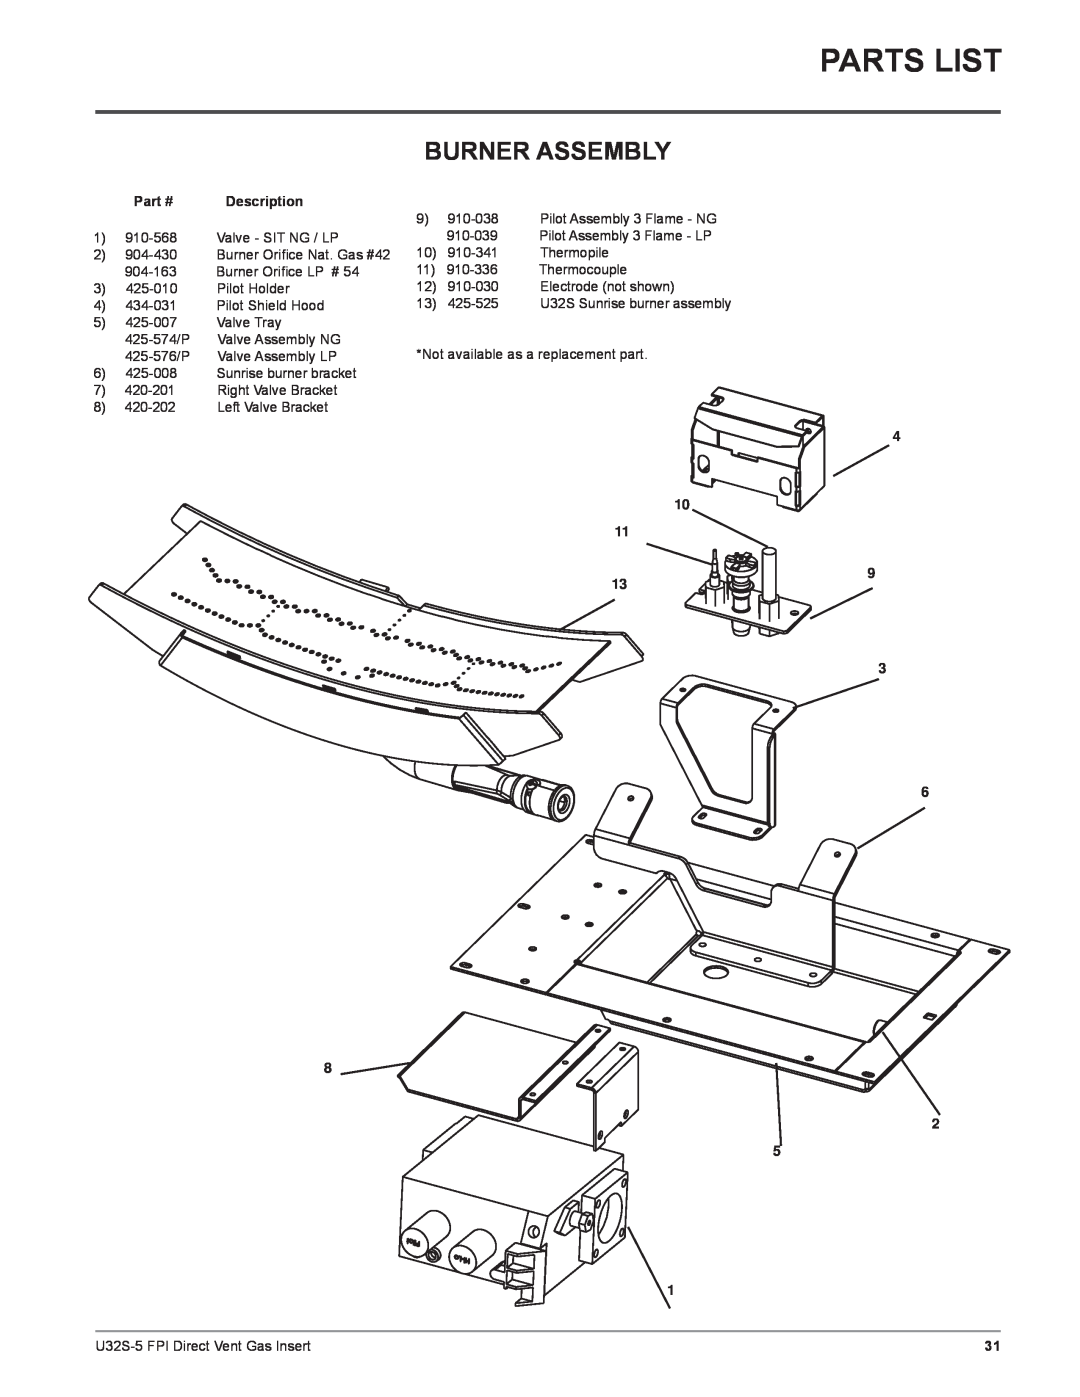 Regency U32S-LP5, U32S-NG5 installation manual Parts List, Burner Assembly, Description, 4 10 11 9 13 3 